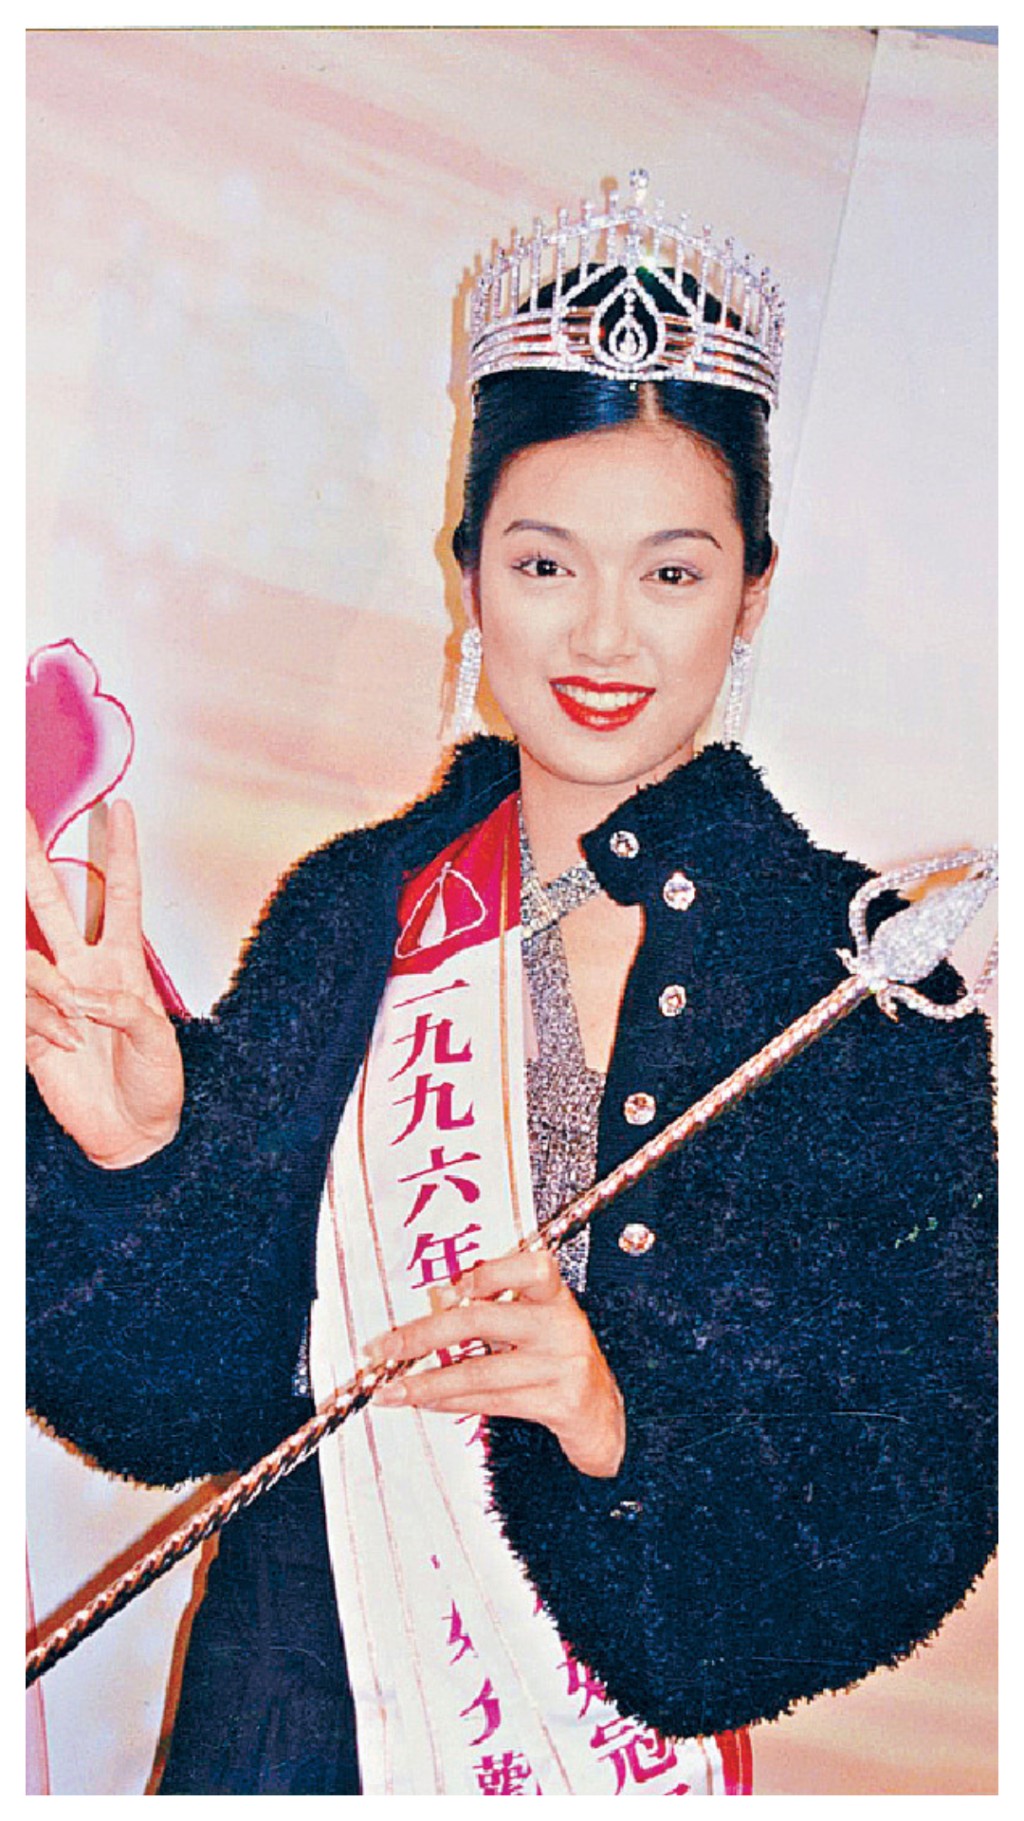 第5位：李珊珊 李珊珊是1996年度香港小姐冠軍，亦是1997年度國際華裔小姐競選亞軍，曾經演出多部電視劇，包括《烈火雄心》、《鑑證實錄》等，不過2004年後她便淡出娛樂圈，其後她指自己於2017年患驚恐症，逐步康復，現時深居簡出。 